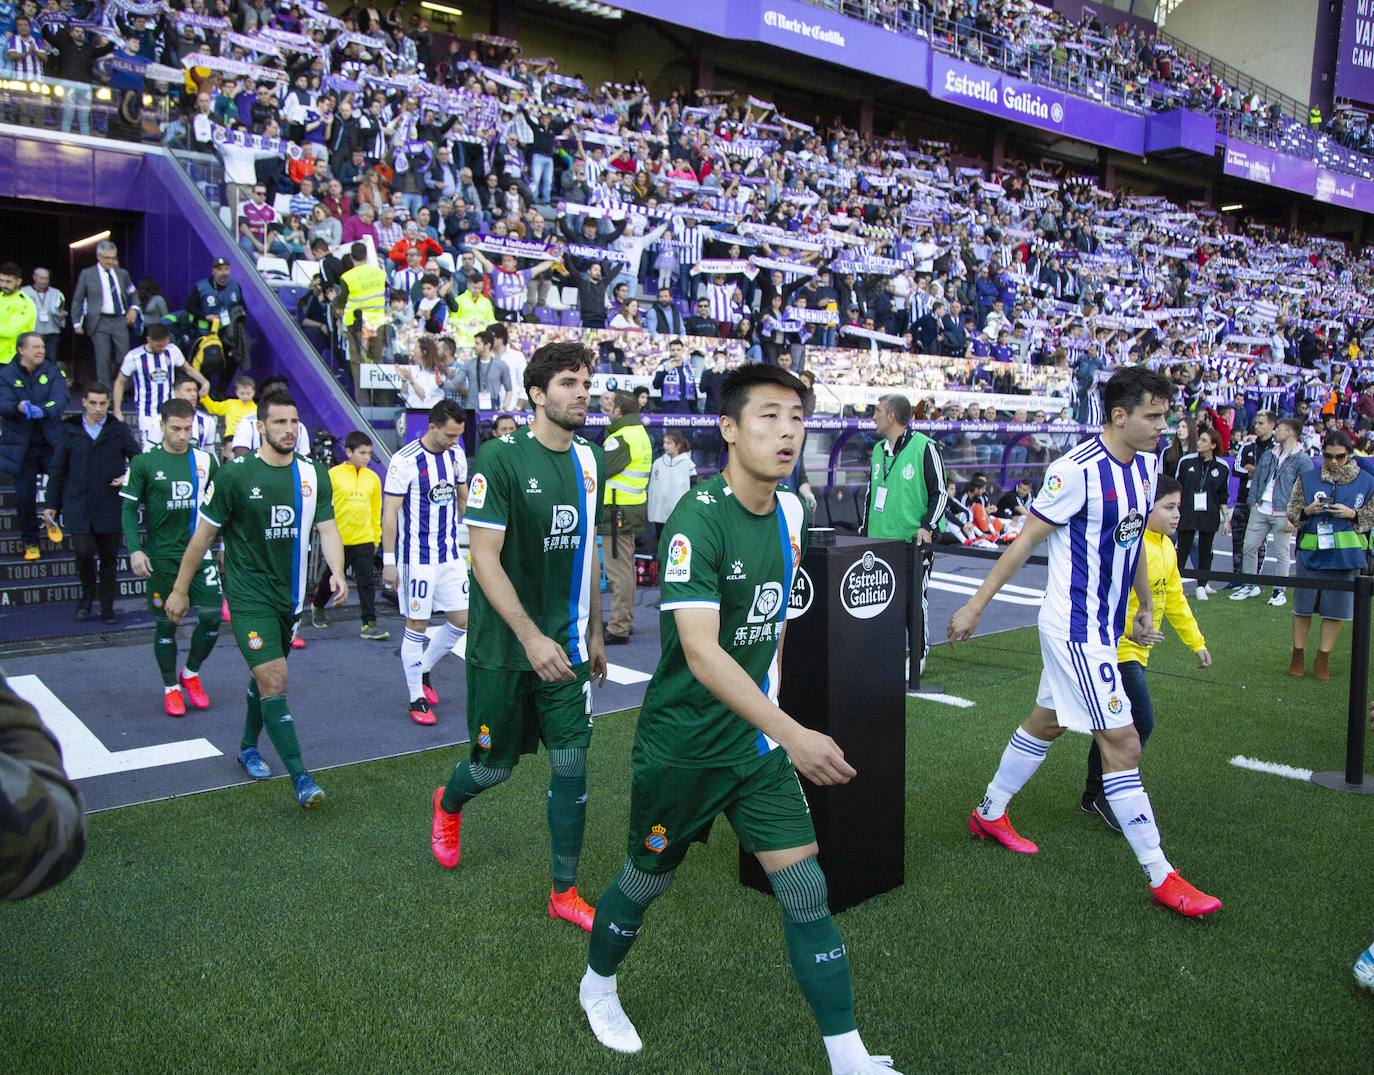 Los goles de Sandro y Sergi Guardiola desatascaron un partido plomizo en el que el Espanyol jugó con uno menos durante más de una hora. 